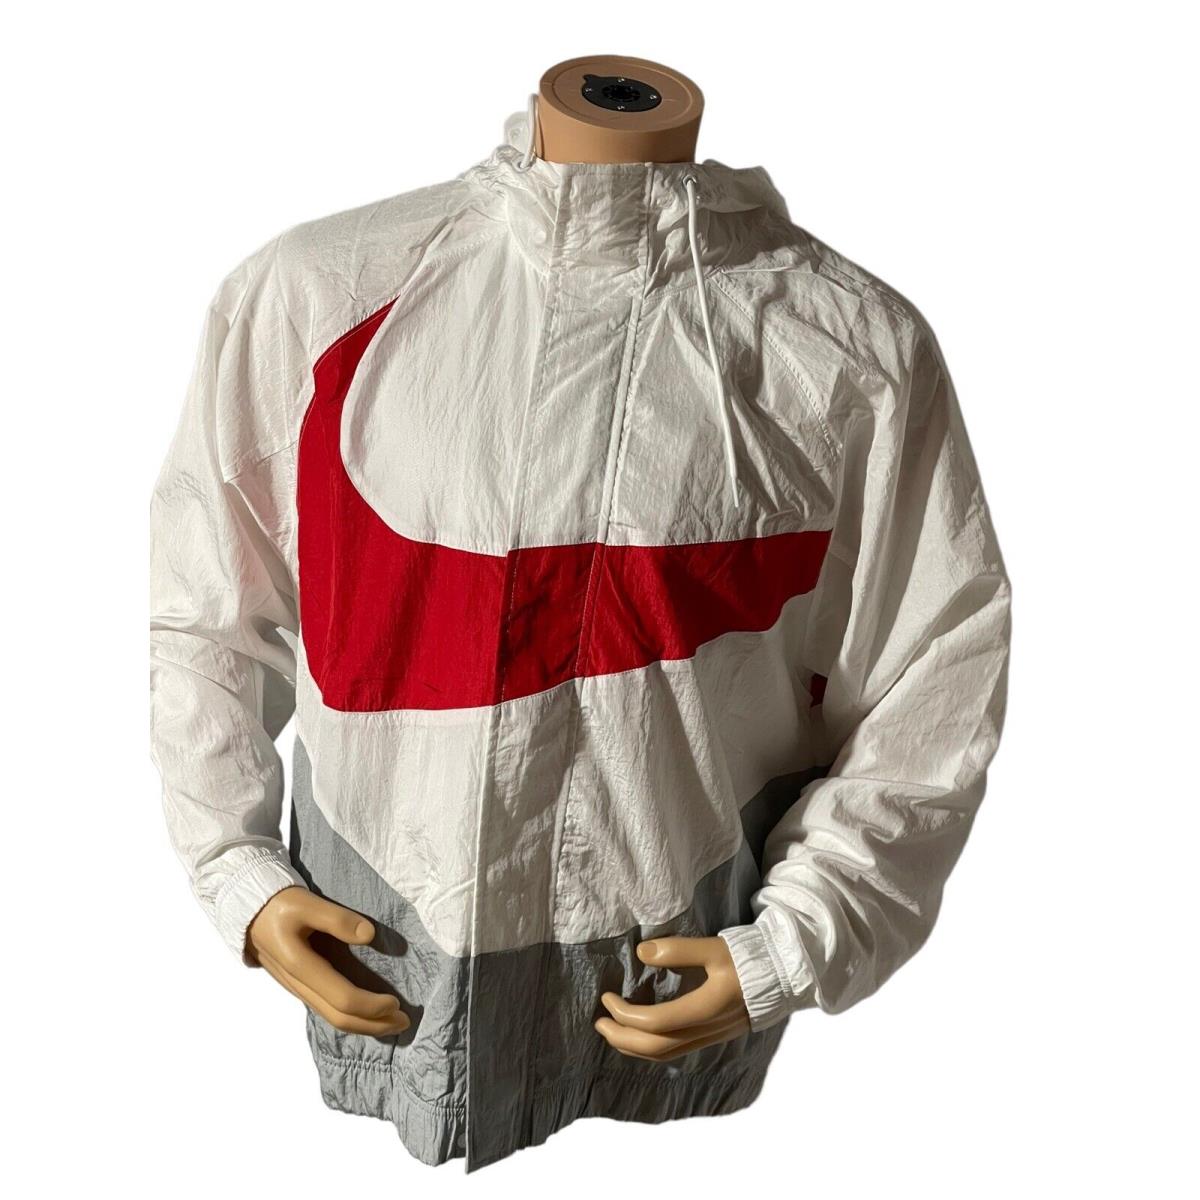 Nike Sportswear Swoosh dd5967 100 Men s Large Red White